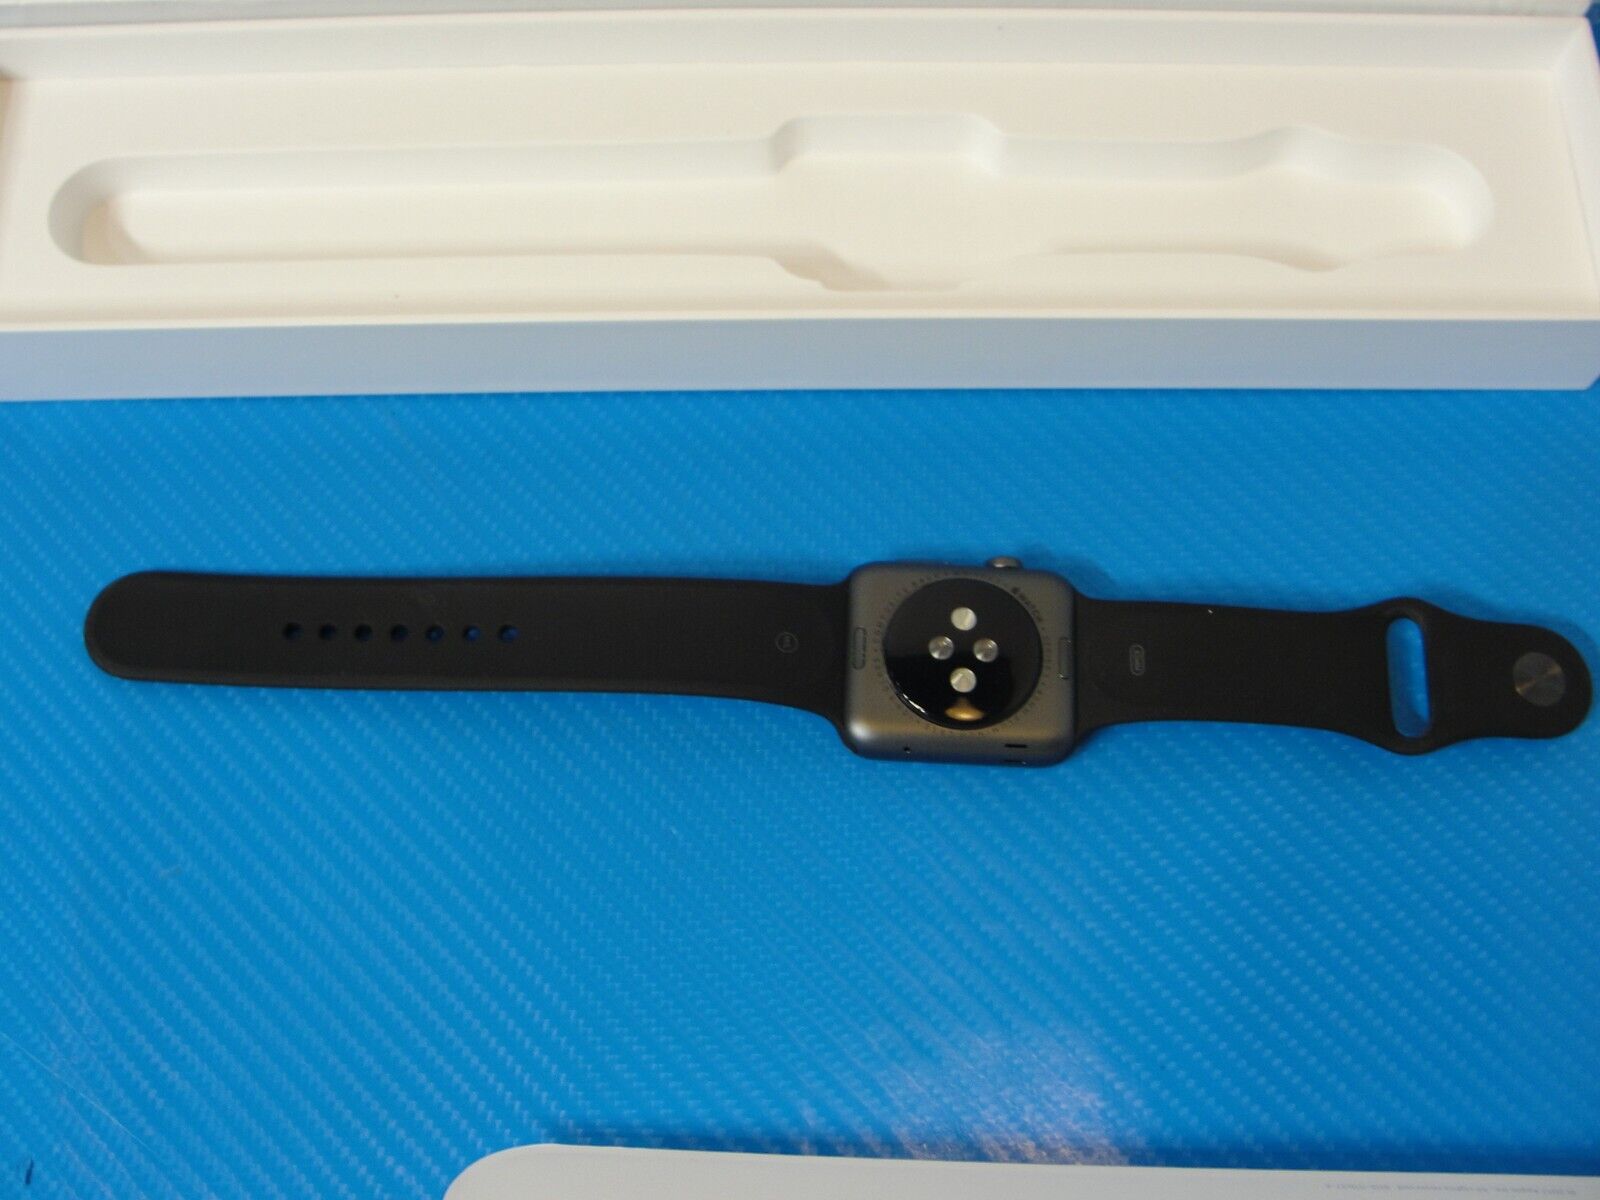 Apple Watch Series 1 42mm Aluminum Case Smartwatch - Grey (MP032LL/A)